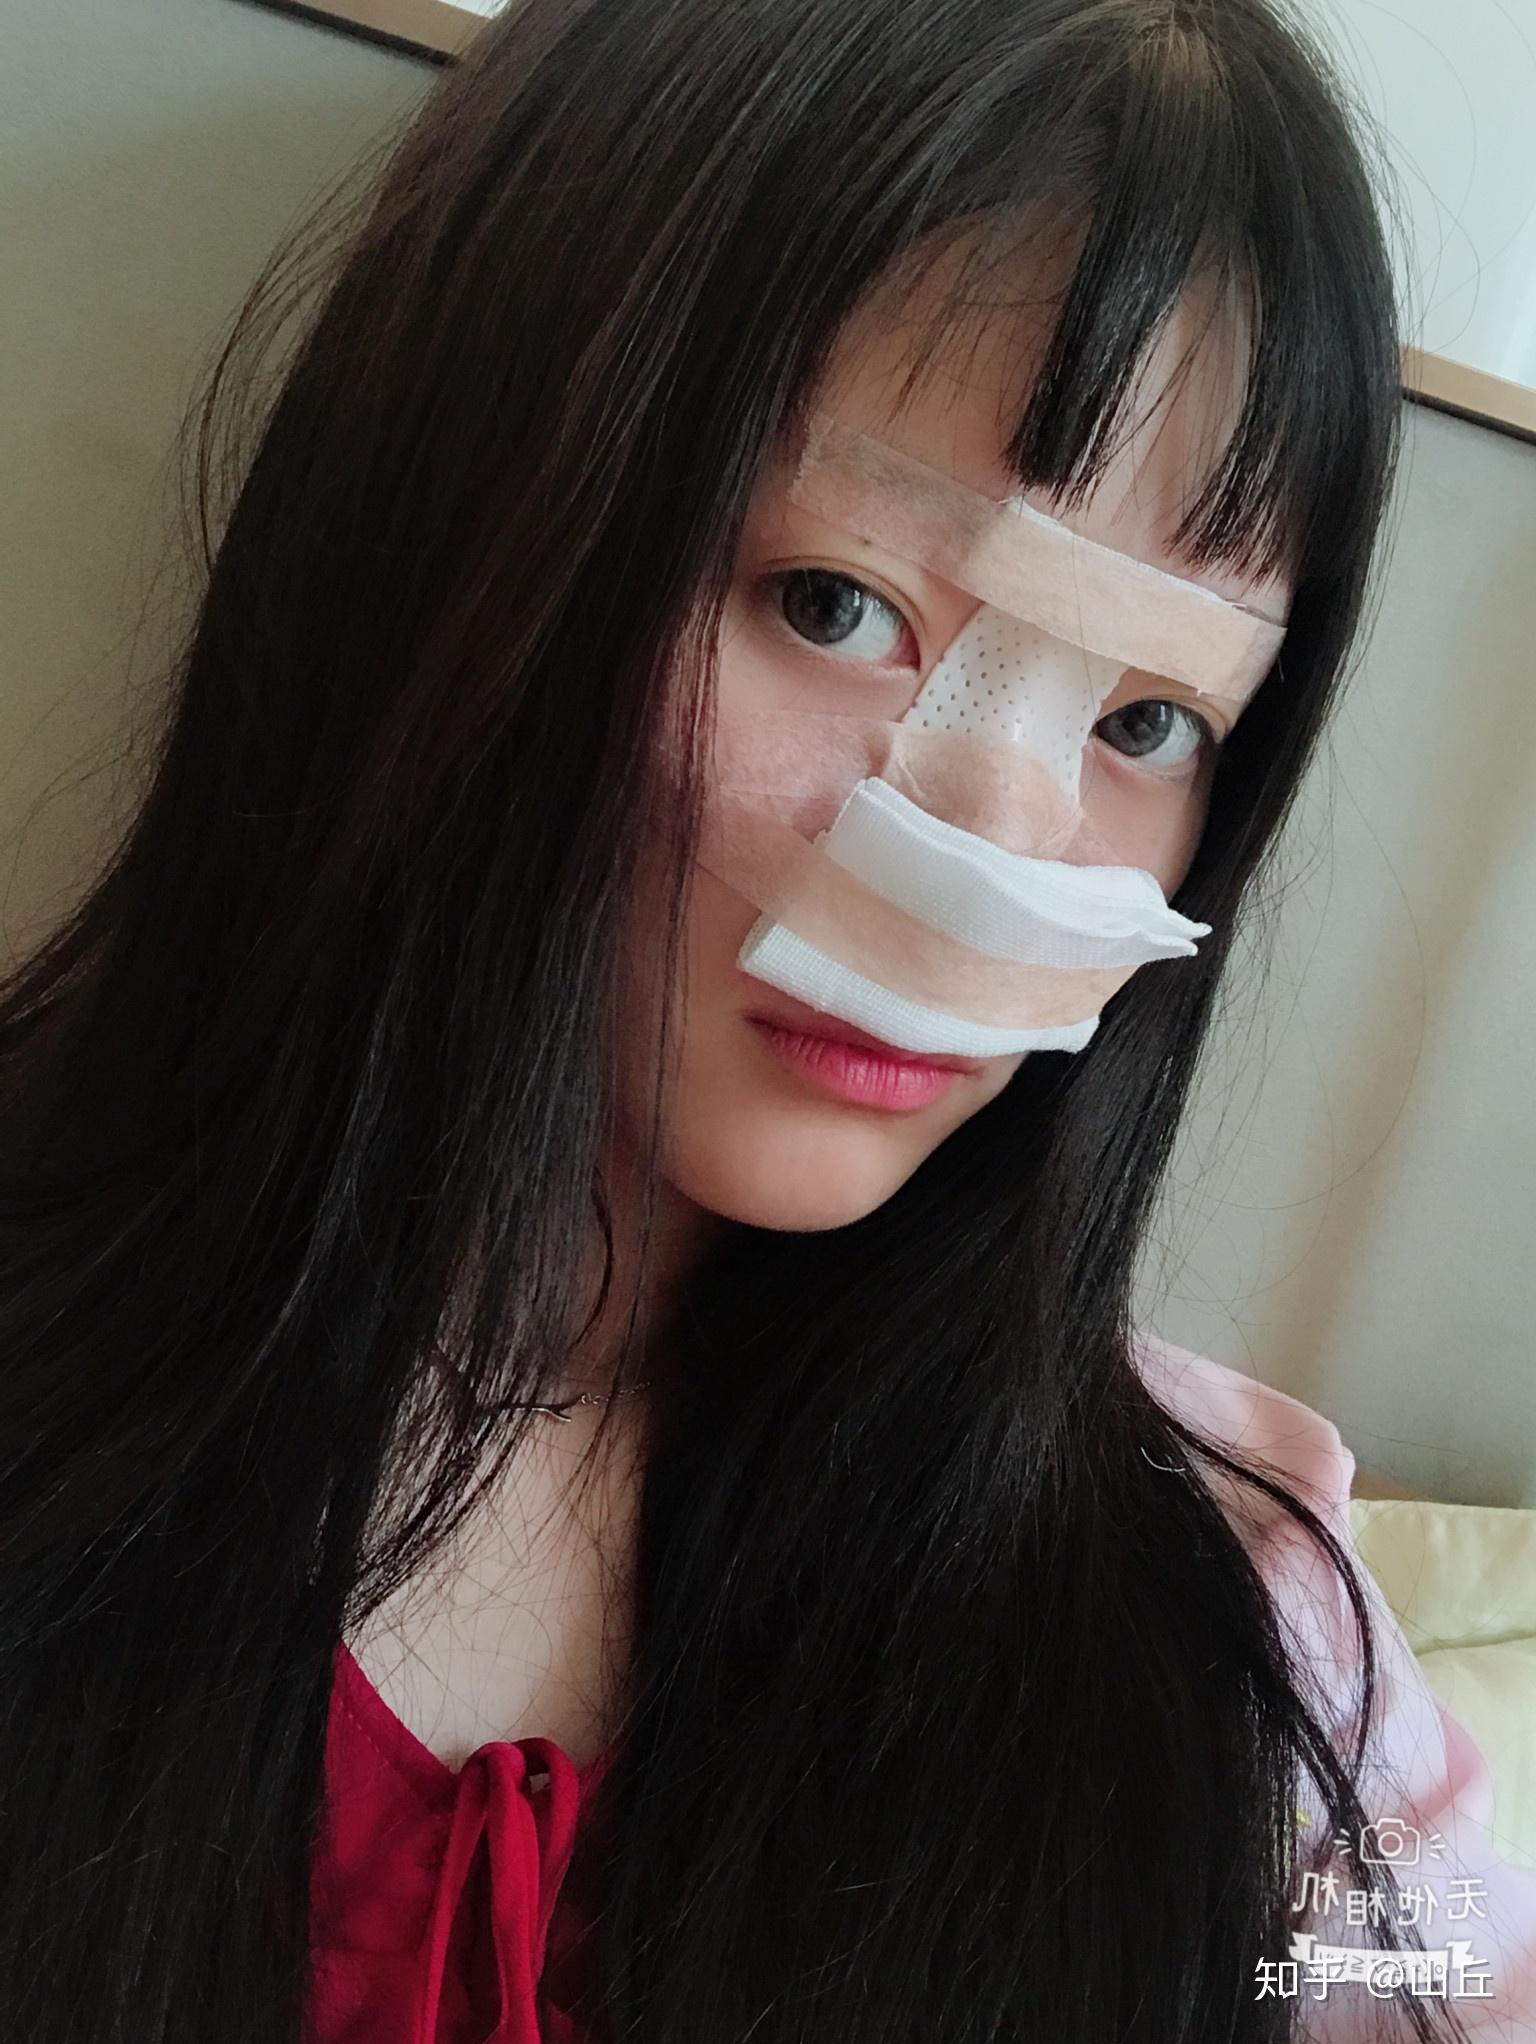 这是术后的第二天,为保护鼻子,被纱布包着,鼻子还是红肿和疼的